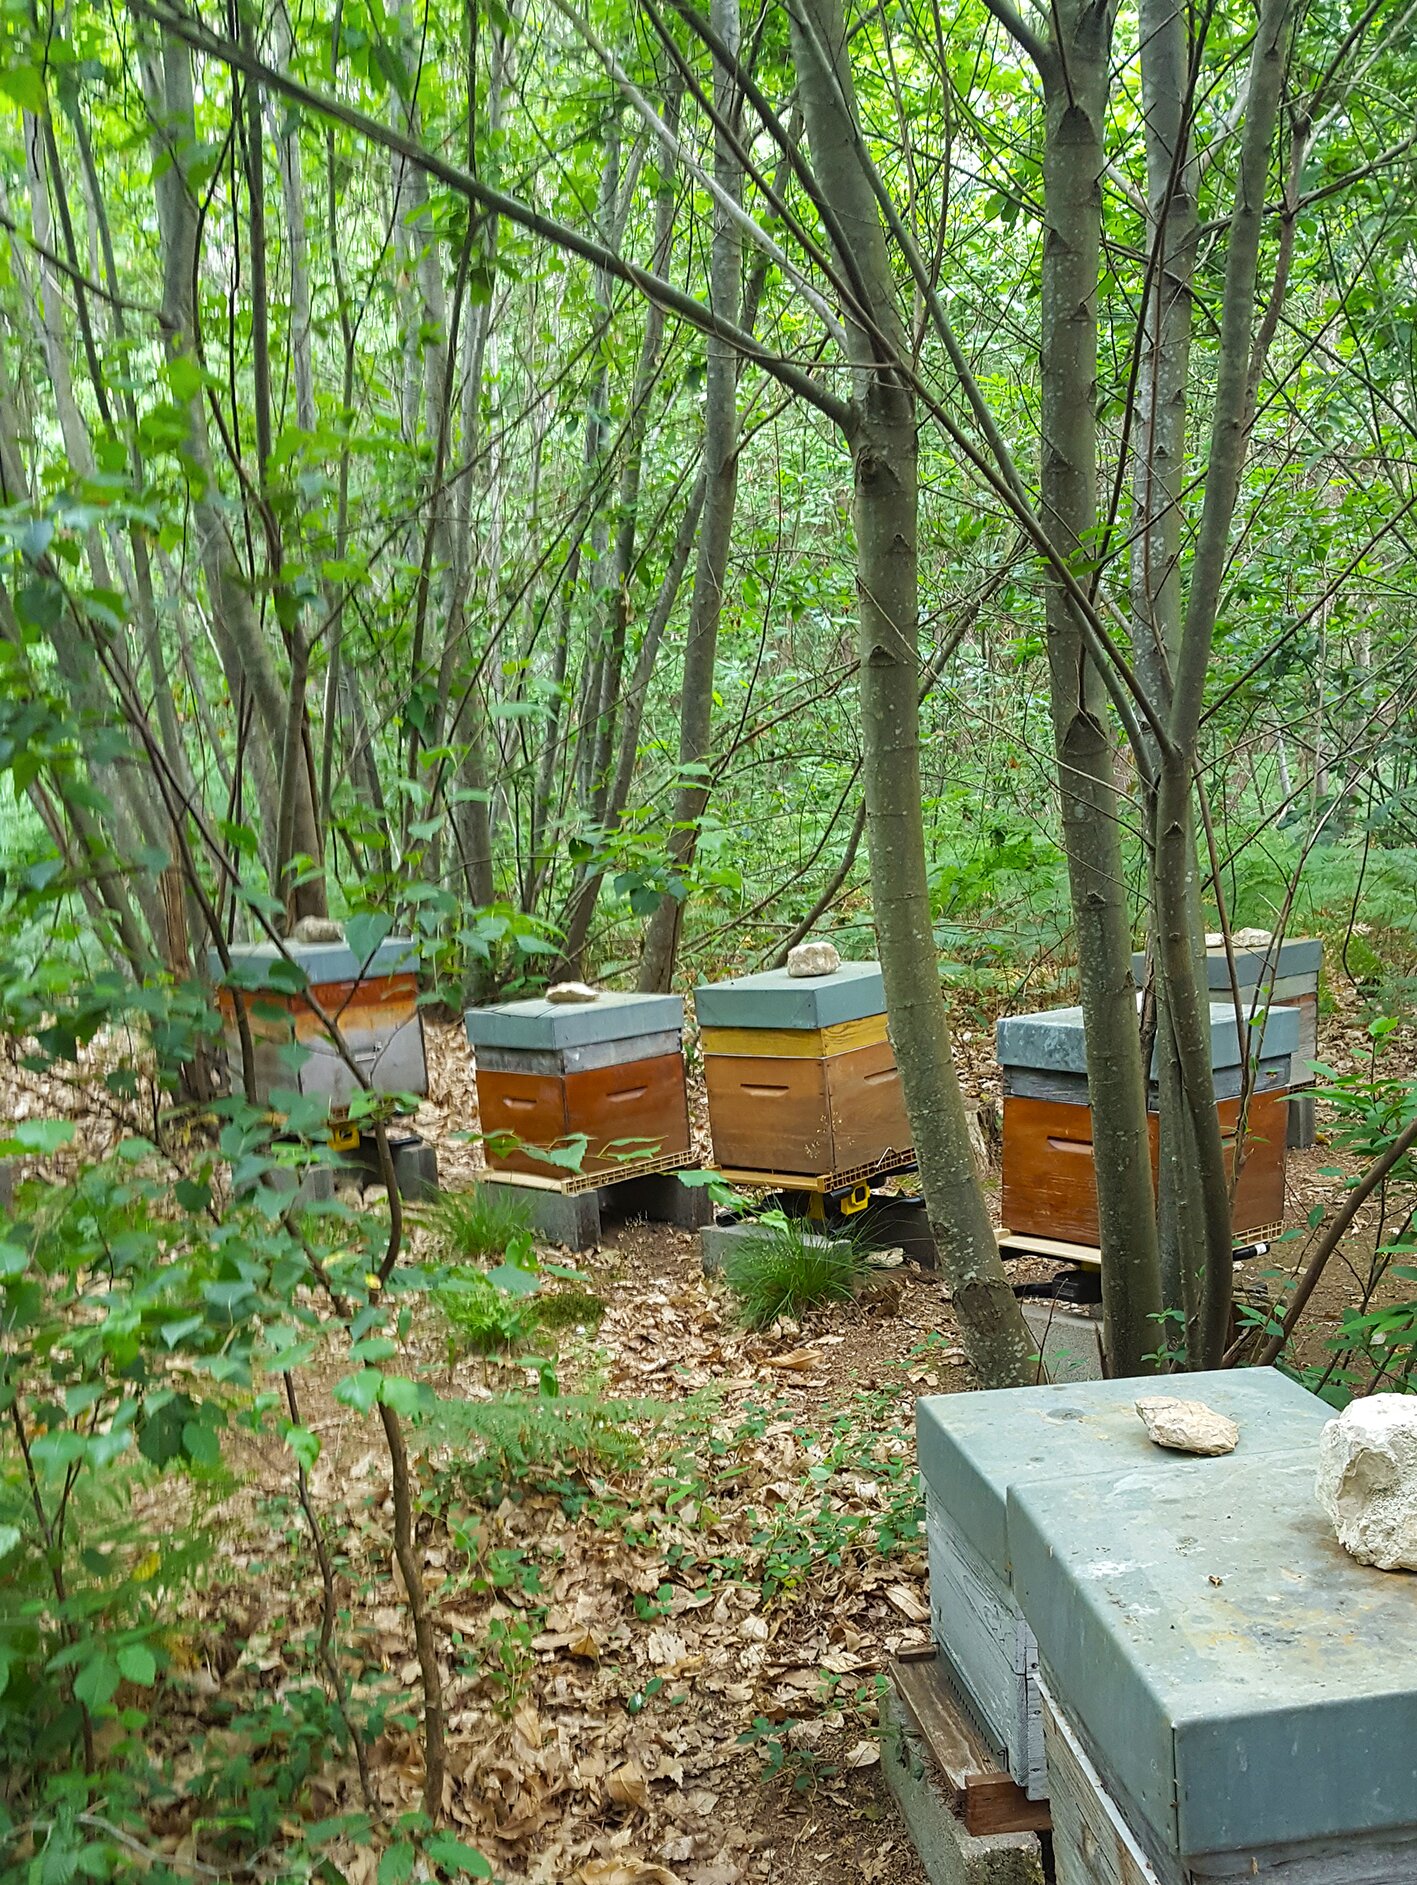 LABEL ABEILLE - Thélem Assurances finance 9 ruches connectées à un apiculteur professionnel, pour l'aider à maintenir et développer son activité